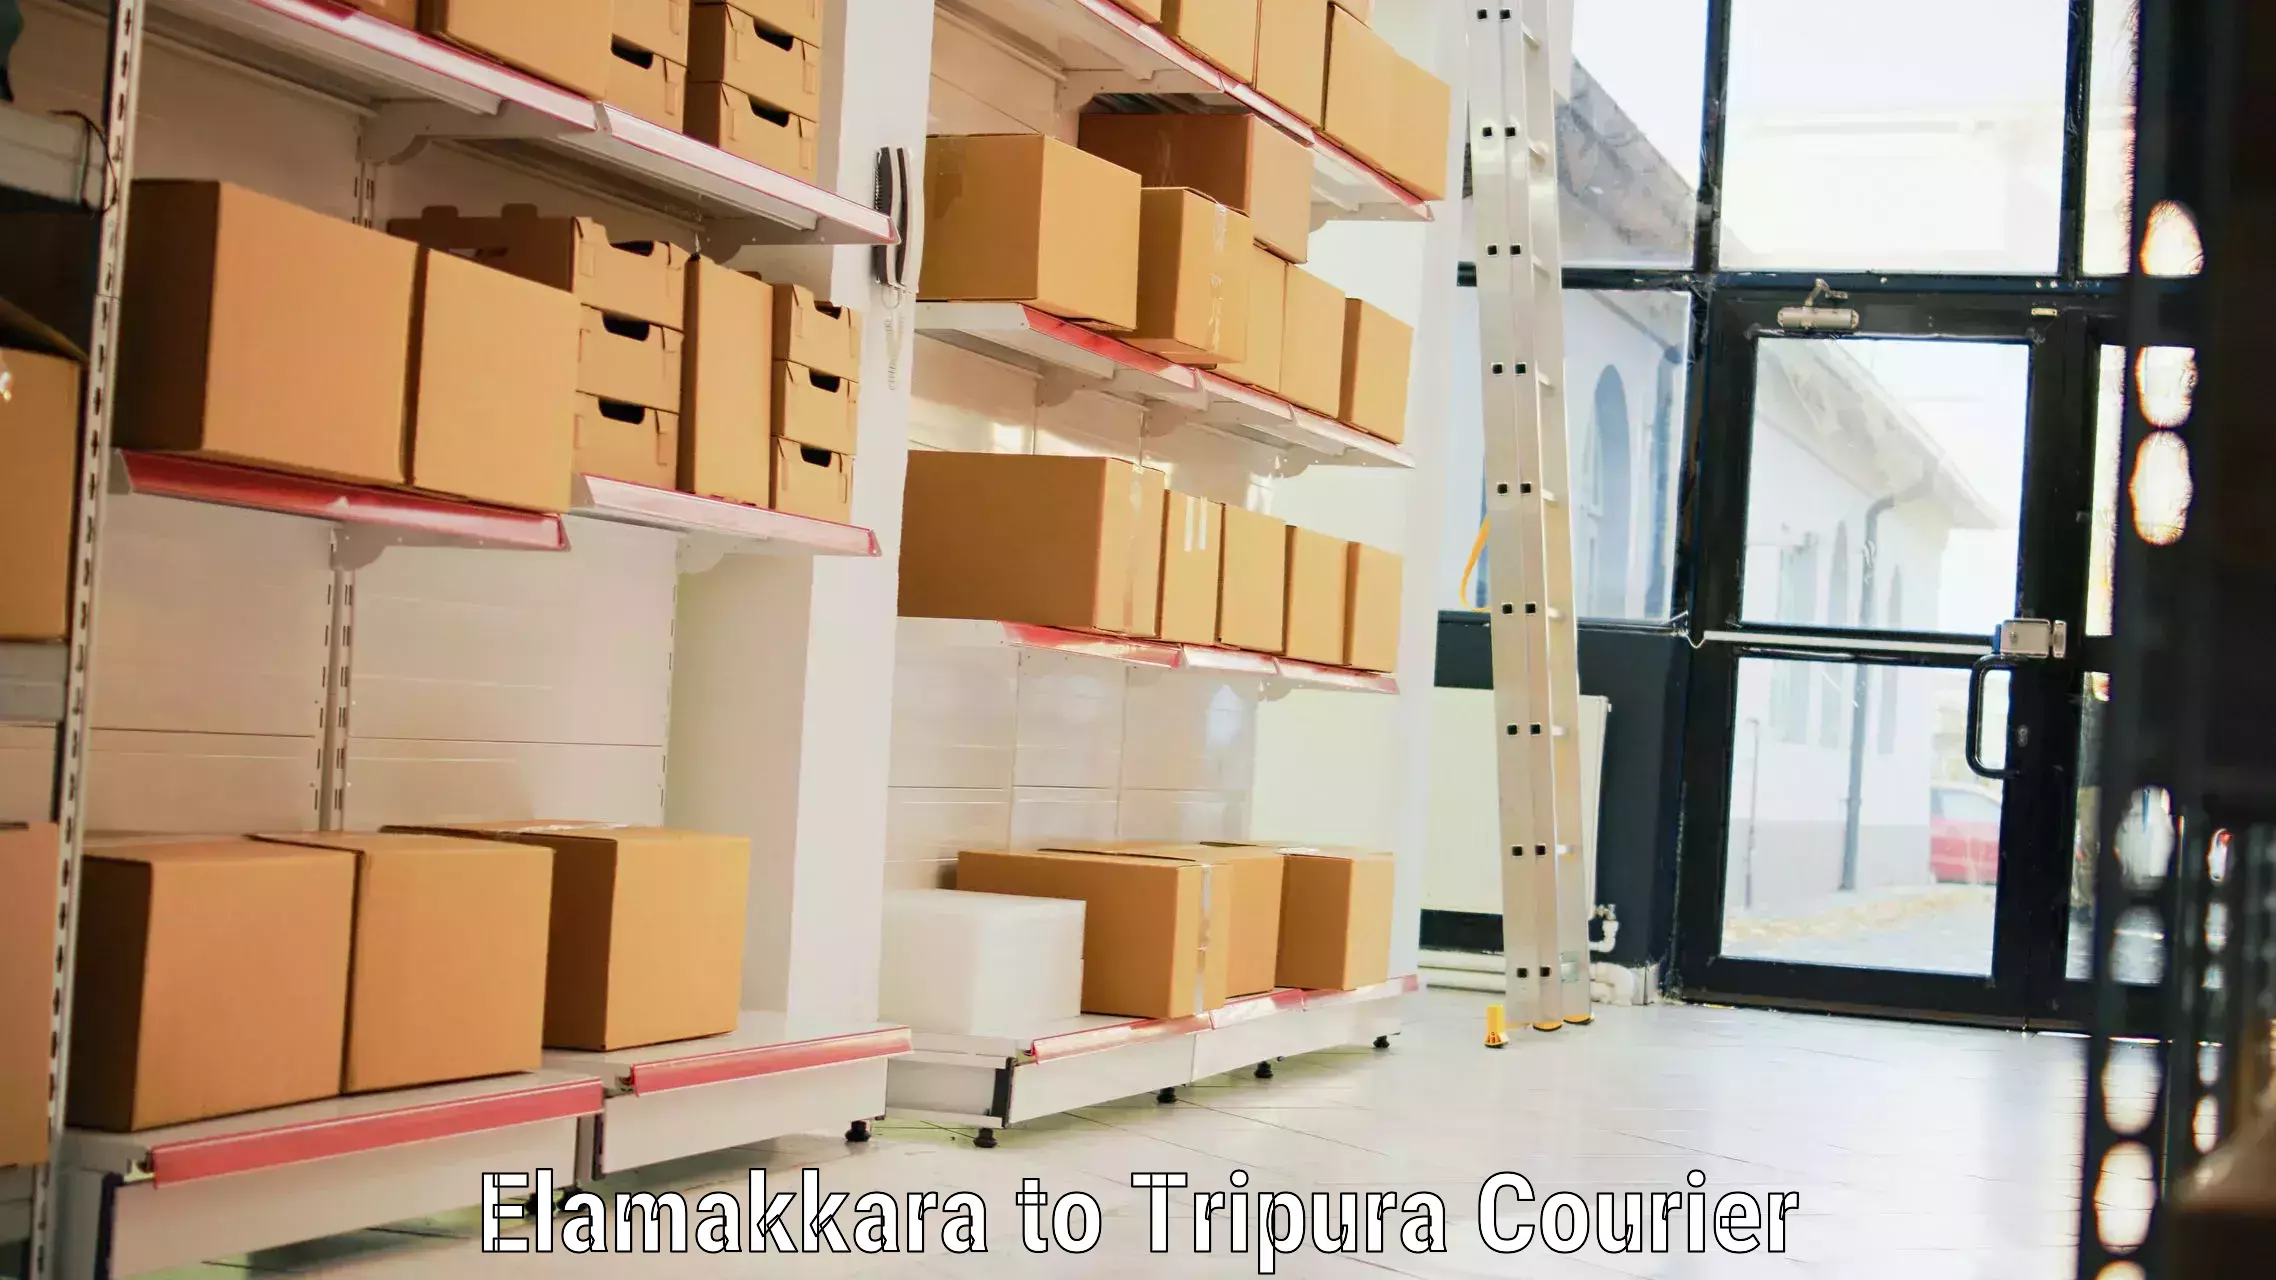 Hassle-free luggage shipping Elamakkara to Sonamura